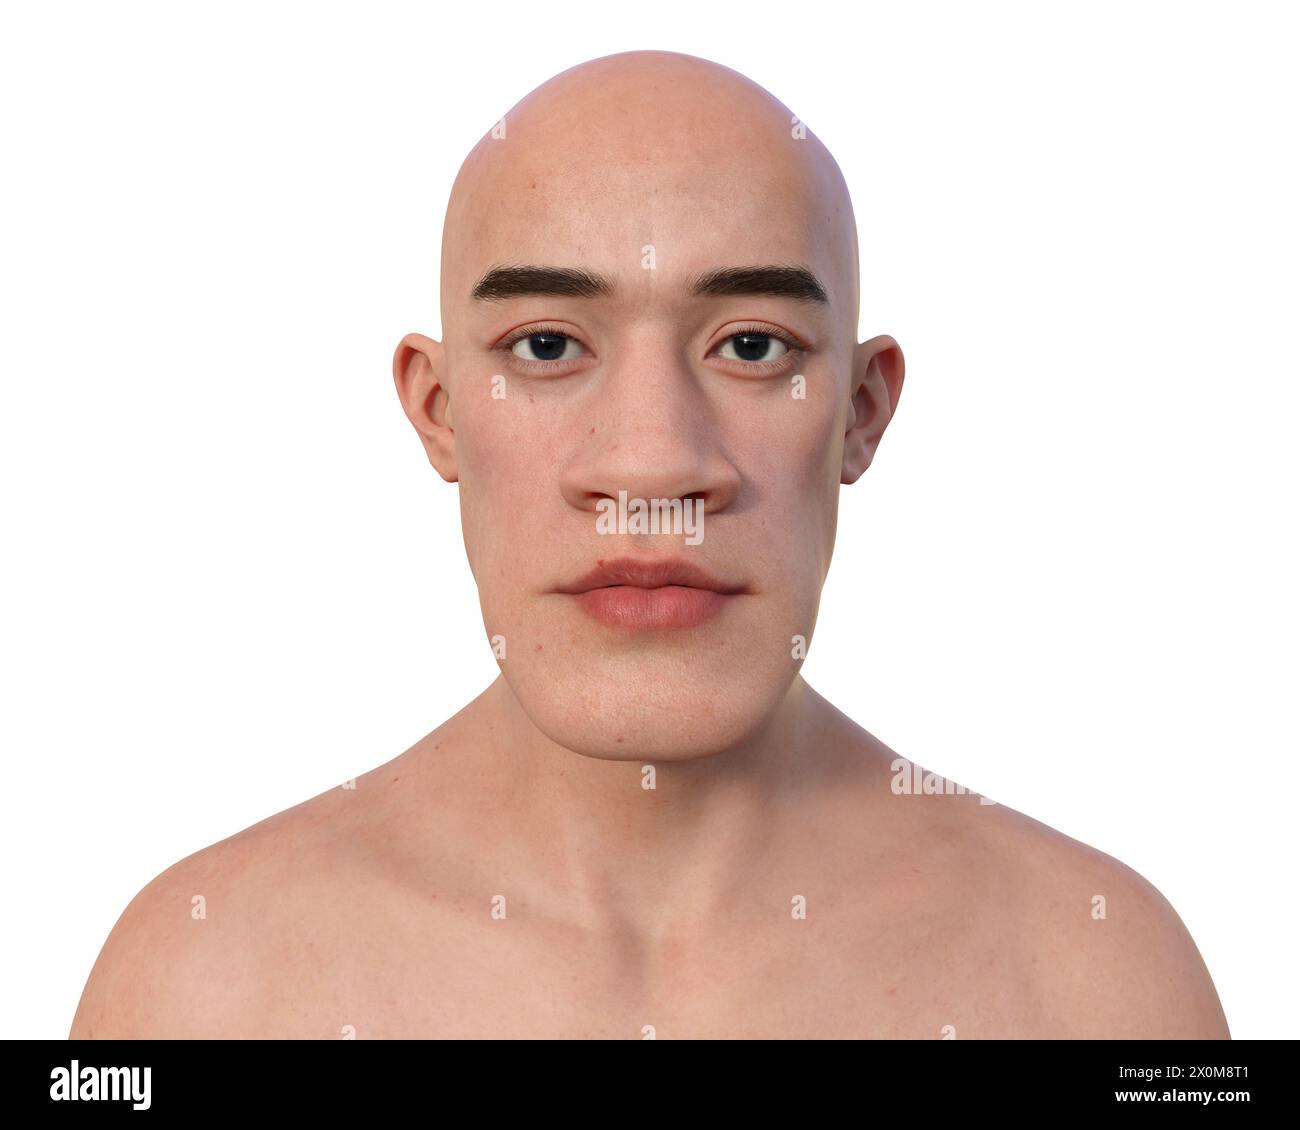 3D-Illustration eines Mannes mit Akromegalie. Dies ist eine Erkrankung, die aufgrund der Überproduktion von Somatotropin (menschliches Wachstumshormon) zu einer Vergrößerung der Hände und des Gesichts führt. Sie ist typischerweise das Ergebnis eines gutartigen Tumors (Adenoms), der sich auf der Hypophyse bildet. Stockfoto